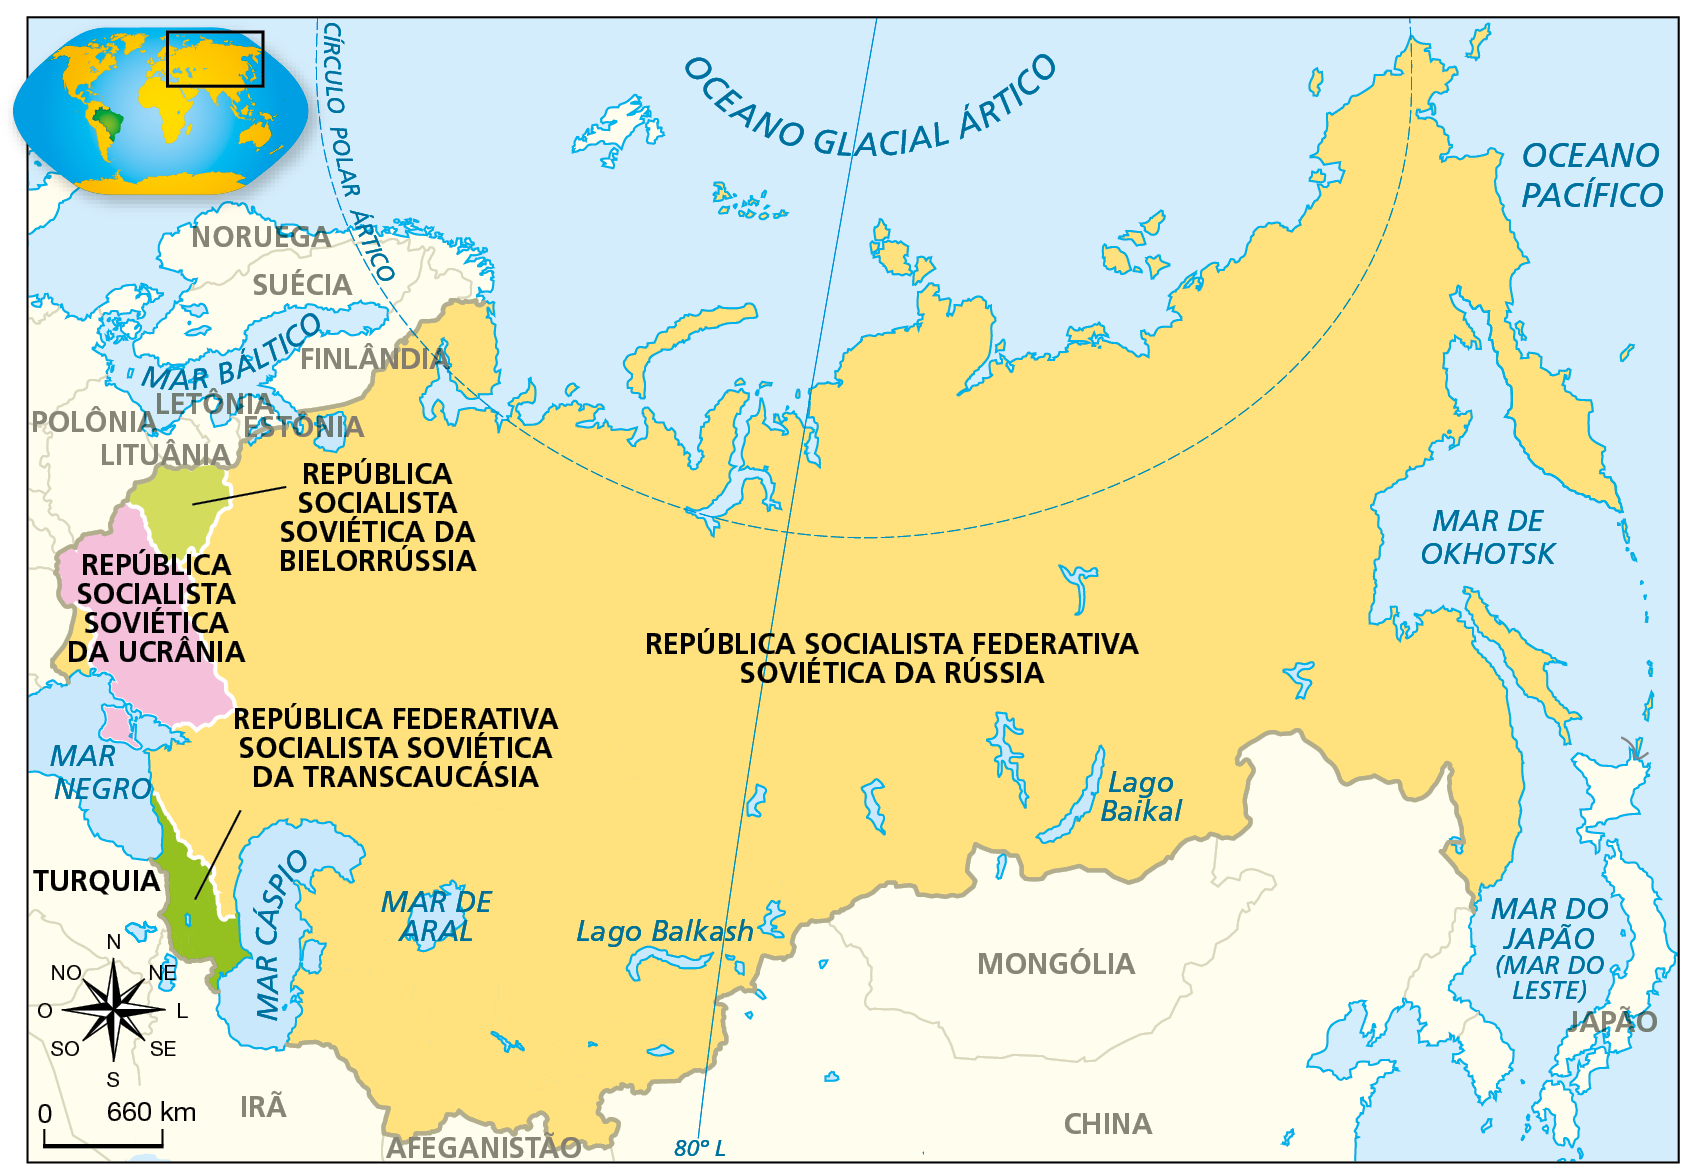 Mapa. União das Repúblicas Socialistas Soviéticas (1922). Mapa representando a porção norte da Eurásia. 
No centro, em amarelo, a República Socialista Federativa Soviética da Rússia; estendendo-se do Mar Báltico, a oeste, até os mares do Leste e Okhotsk e o Oceano Pacífico a leste. Ao norte, o território alcança o Oceano Glacial Ártico e se estende, ao Sul, até os mares Negro, Cáspio e de Aral, estabelecendo fronteiras com o  Irã, o Afeganistão, a China e a Mongólia.
À oeste, em verde claro, a República Socialista Soviética da Bielorrússia, estabelecendo fronteiras com República Socialista Federativa Soviética da Rússia, a leste; a Letônia, Lituânia e Polônia, à oeste, e a República Socialista Soviética da Ucrânia, ao sul.
Ao norte do Mar Negro, em rosa, a República Socialista Soviética da Ucrânia, estabelecendo fronteiras com a República Socialista Federativa Soviética da Rússia, a leste.
Ao sul da República Socialista Federativa Soviética da Rússia, em verde, destaca-se a República Federativa Socialista Soviética da Transcaucásia, localizada entre o Mar Negro e o Mar Cáspio.
Na parte inferior, rosa dos ventos e escala de 0 a 660 quilômetros.